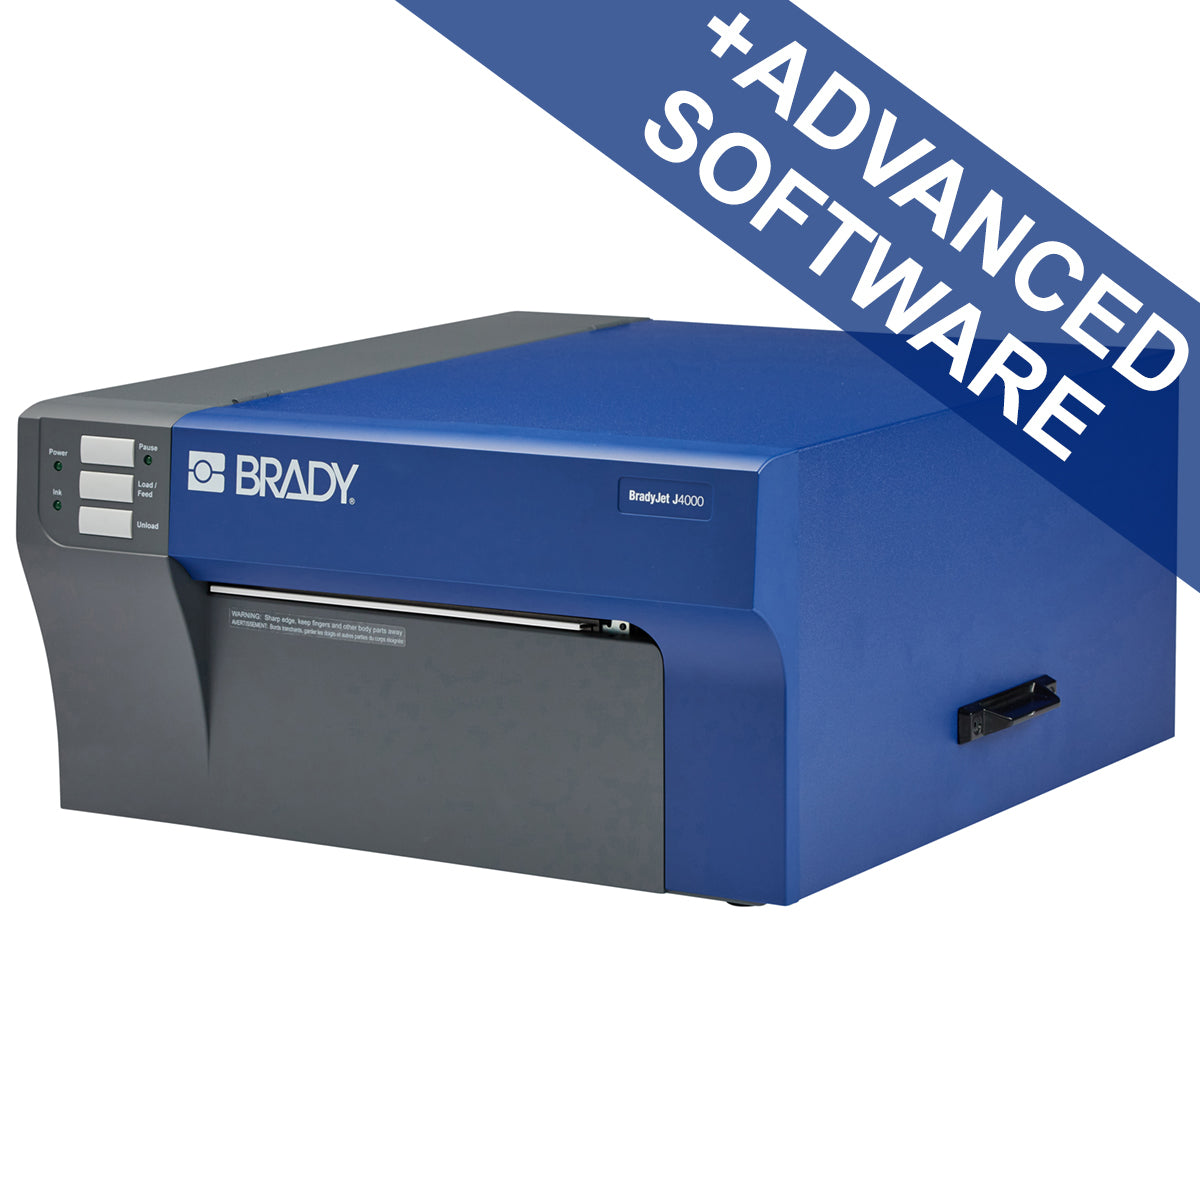 310389 - Stampante a colori per etichette BradyJet J4000 con software Identificazione prodotti e fili